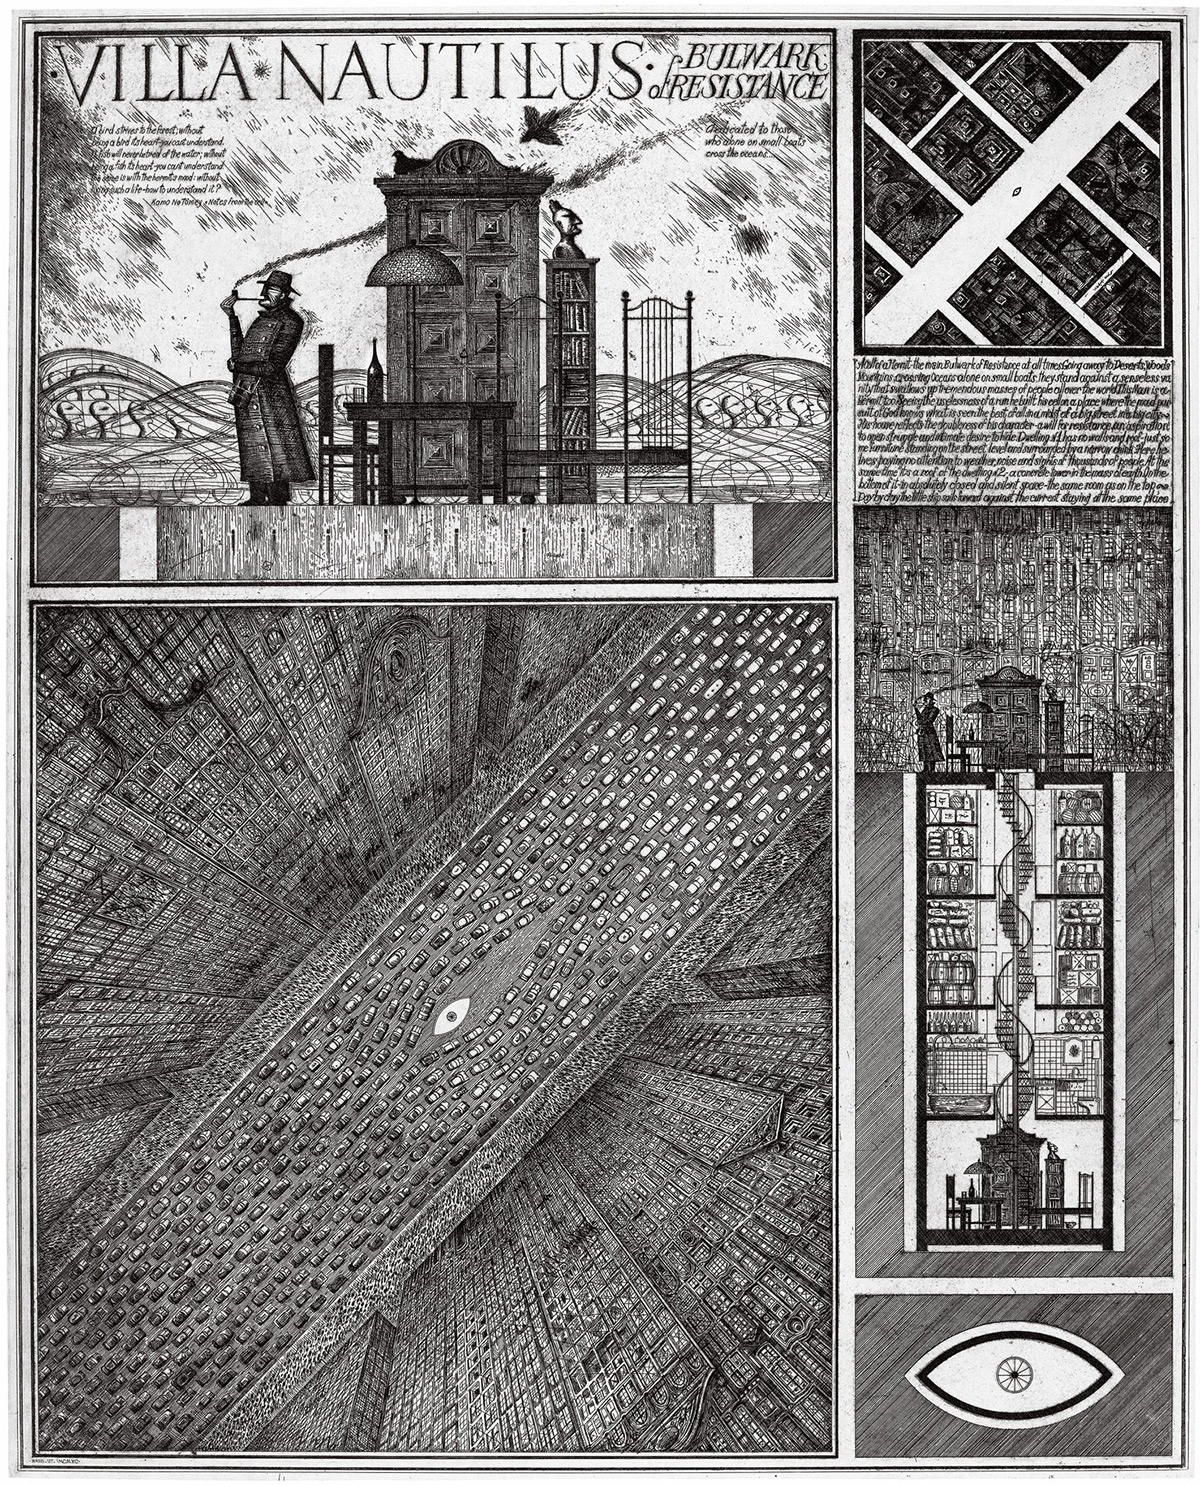 Brodsky & Utkin Fantastical Structures on Paper